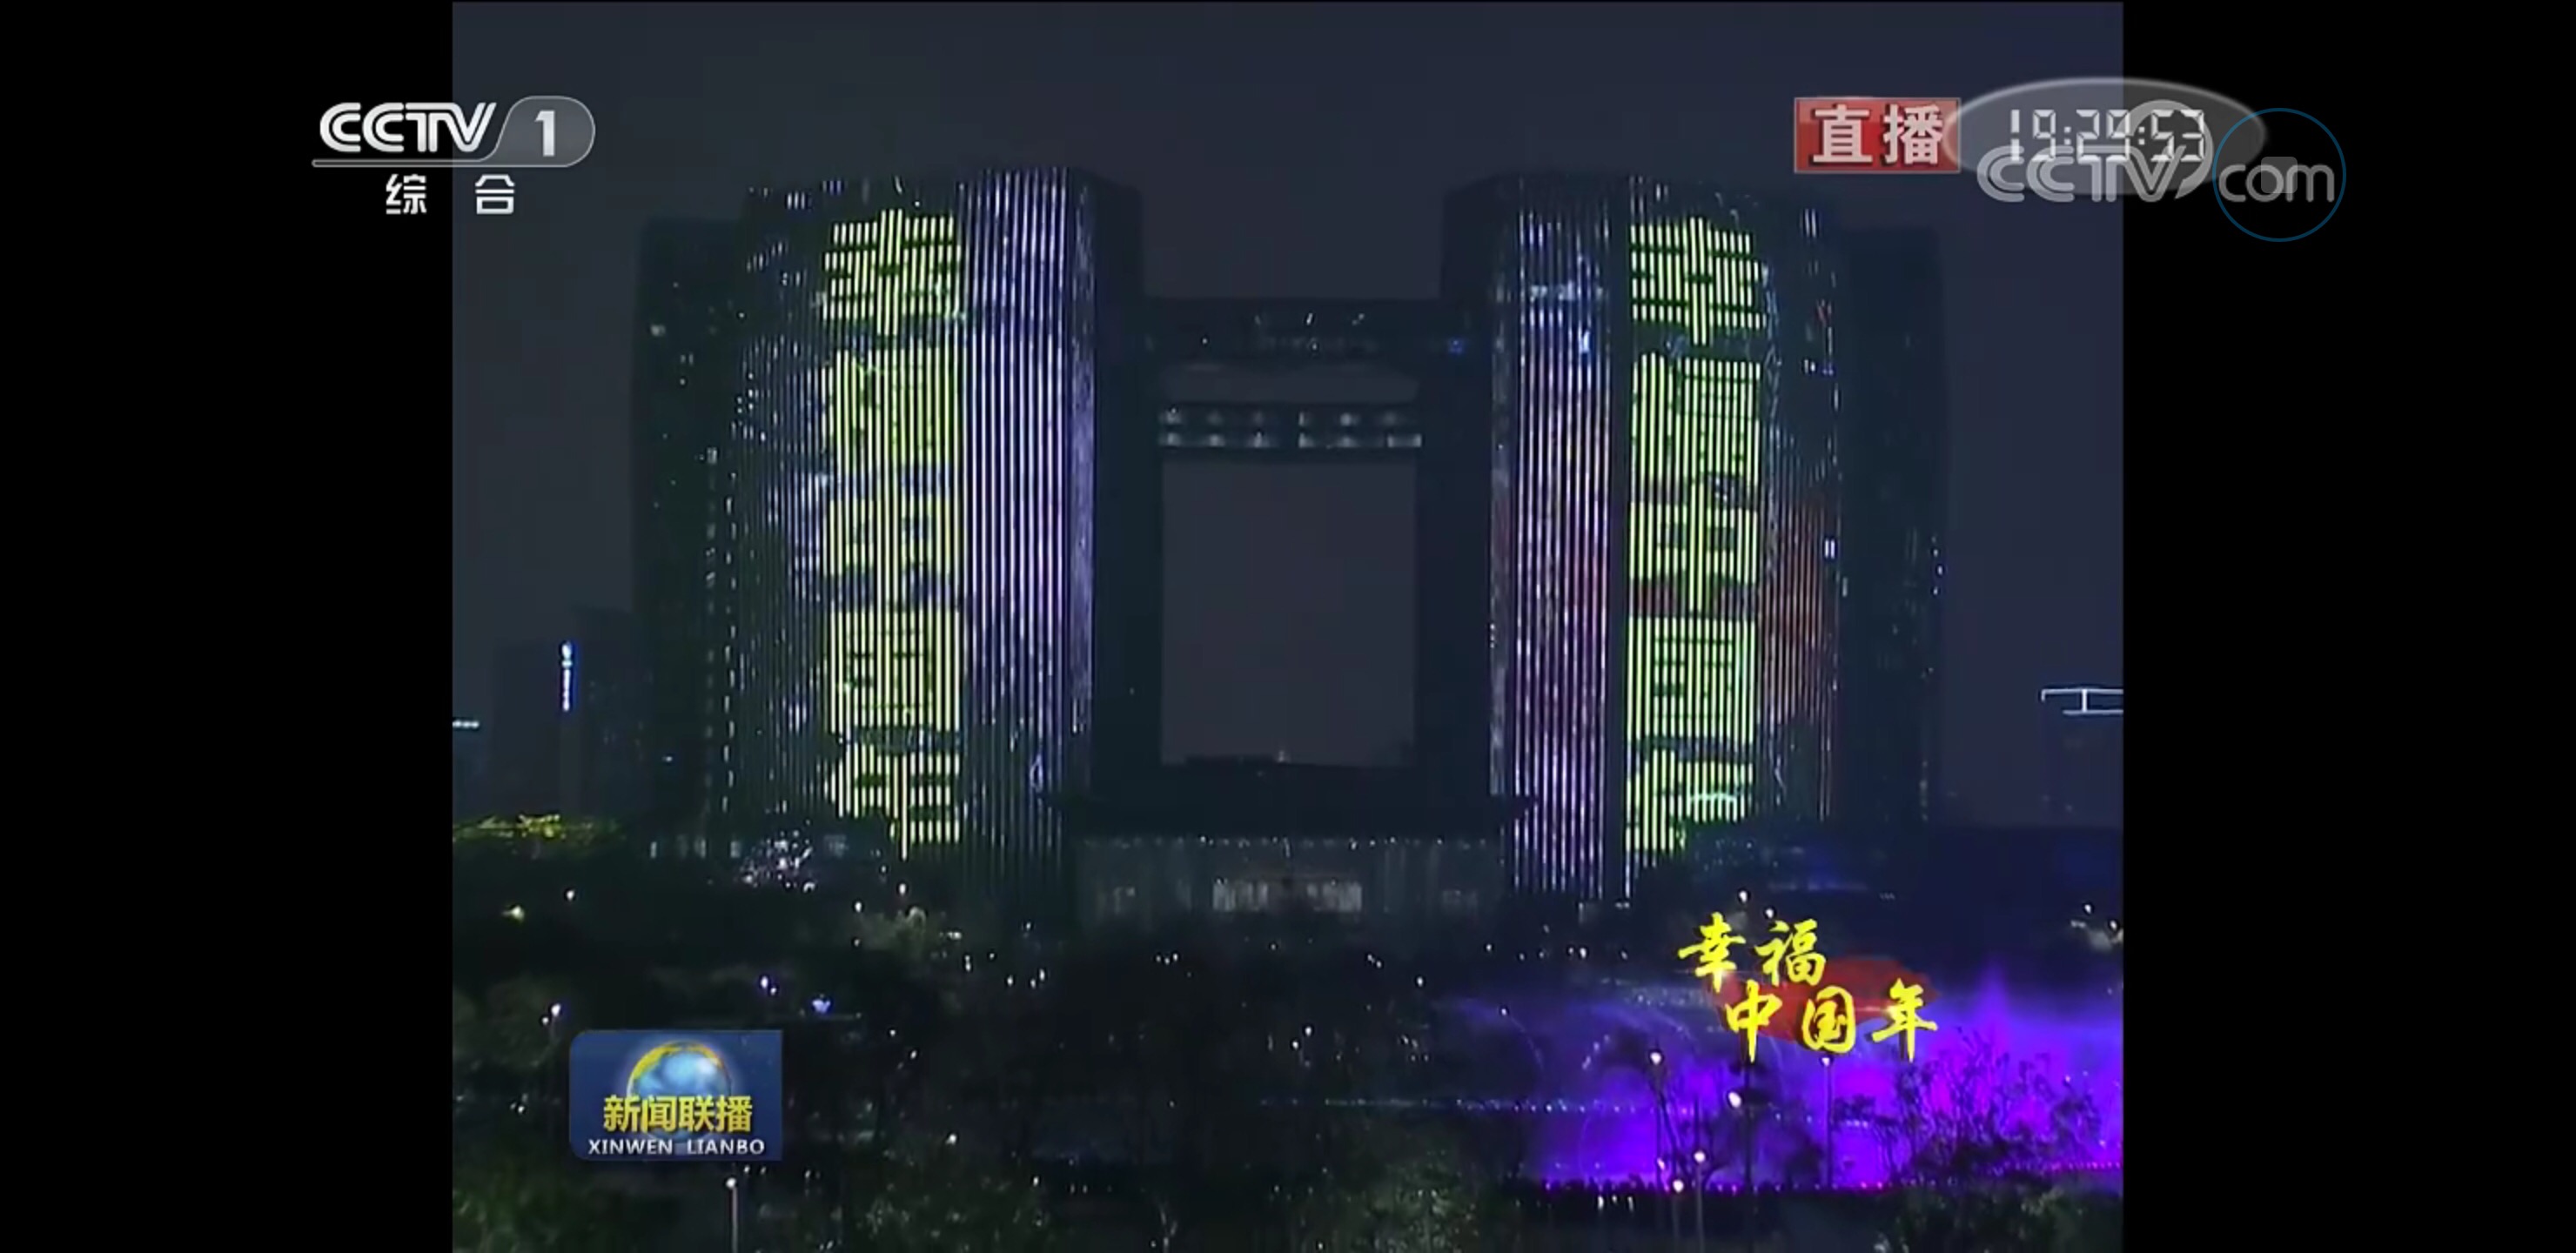 这个春节，世界见证了更好的杭州 大年初三，杭州这幕惊艳灯光秀，火了！